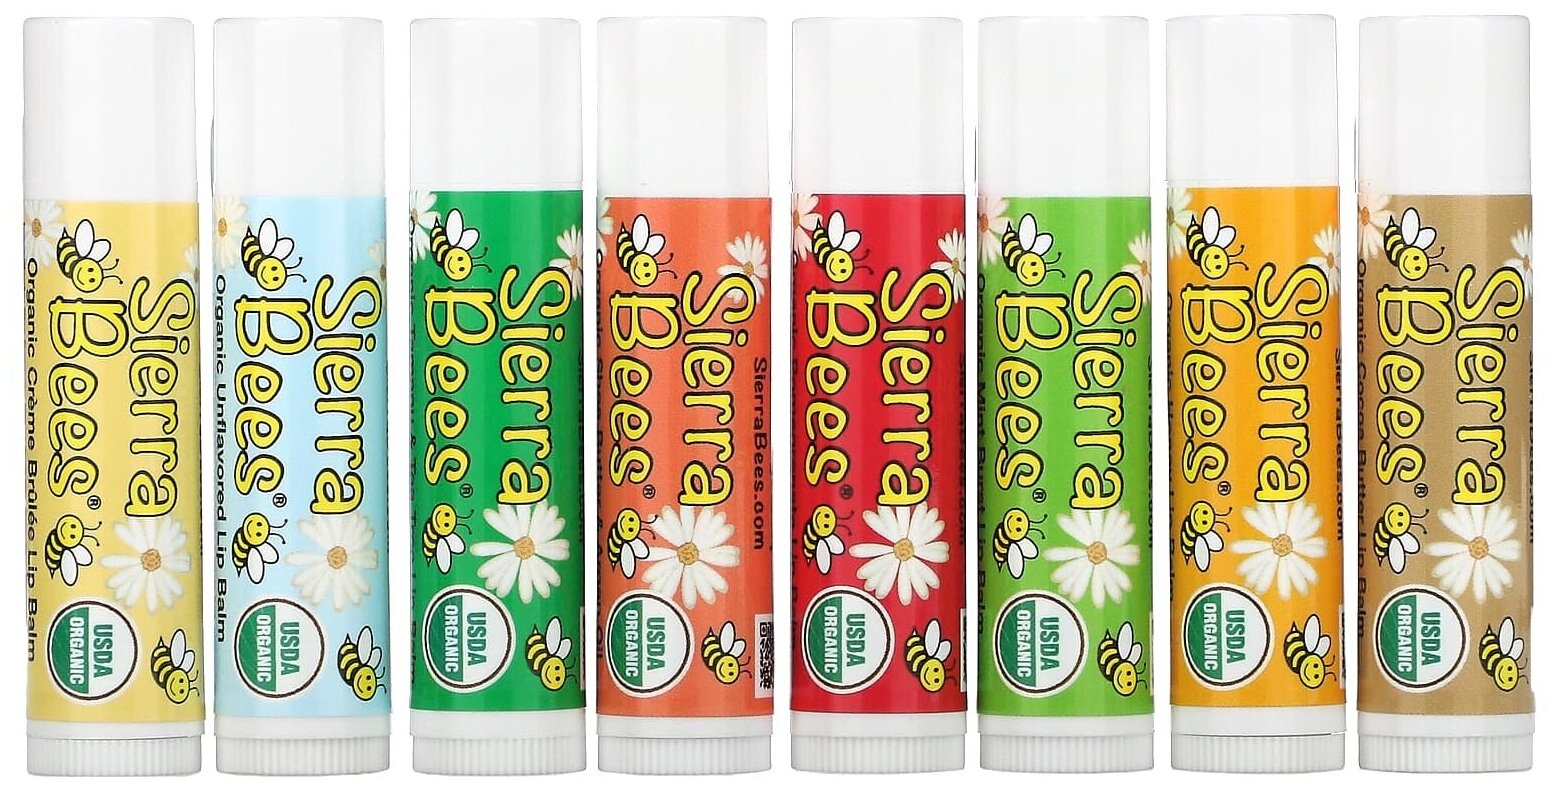 Sierra Bees, набор органических бальзамов для губ, 8 в упаковке, 4,25 г каждый